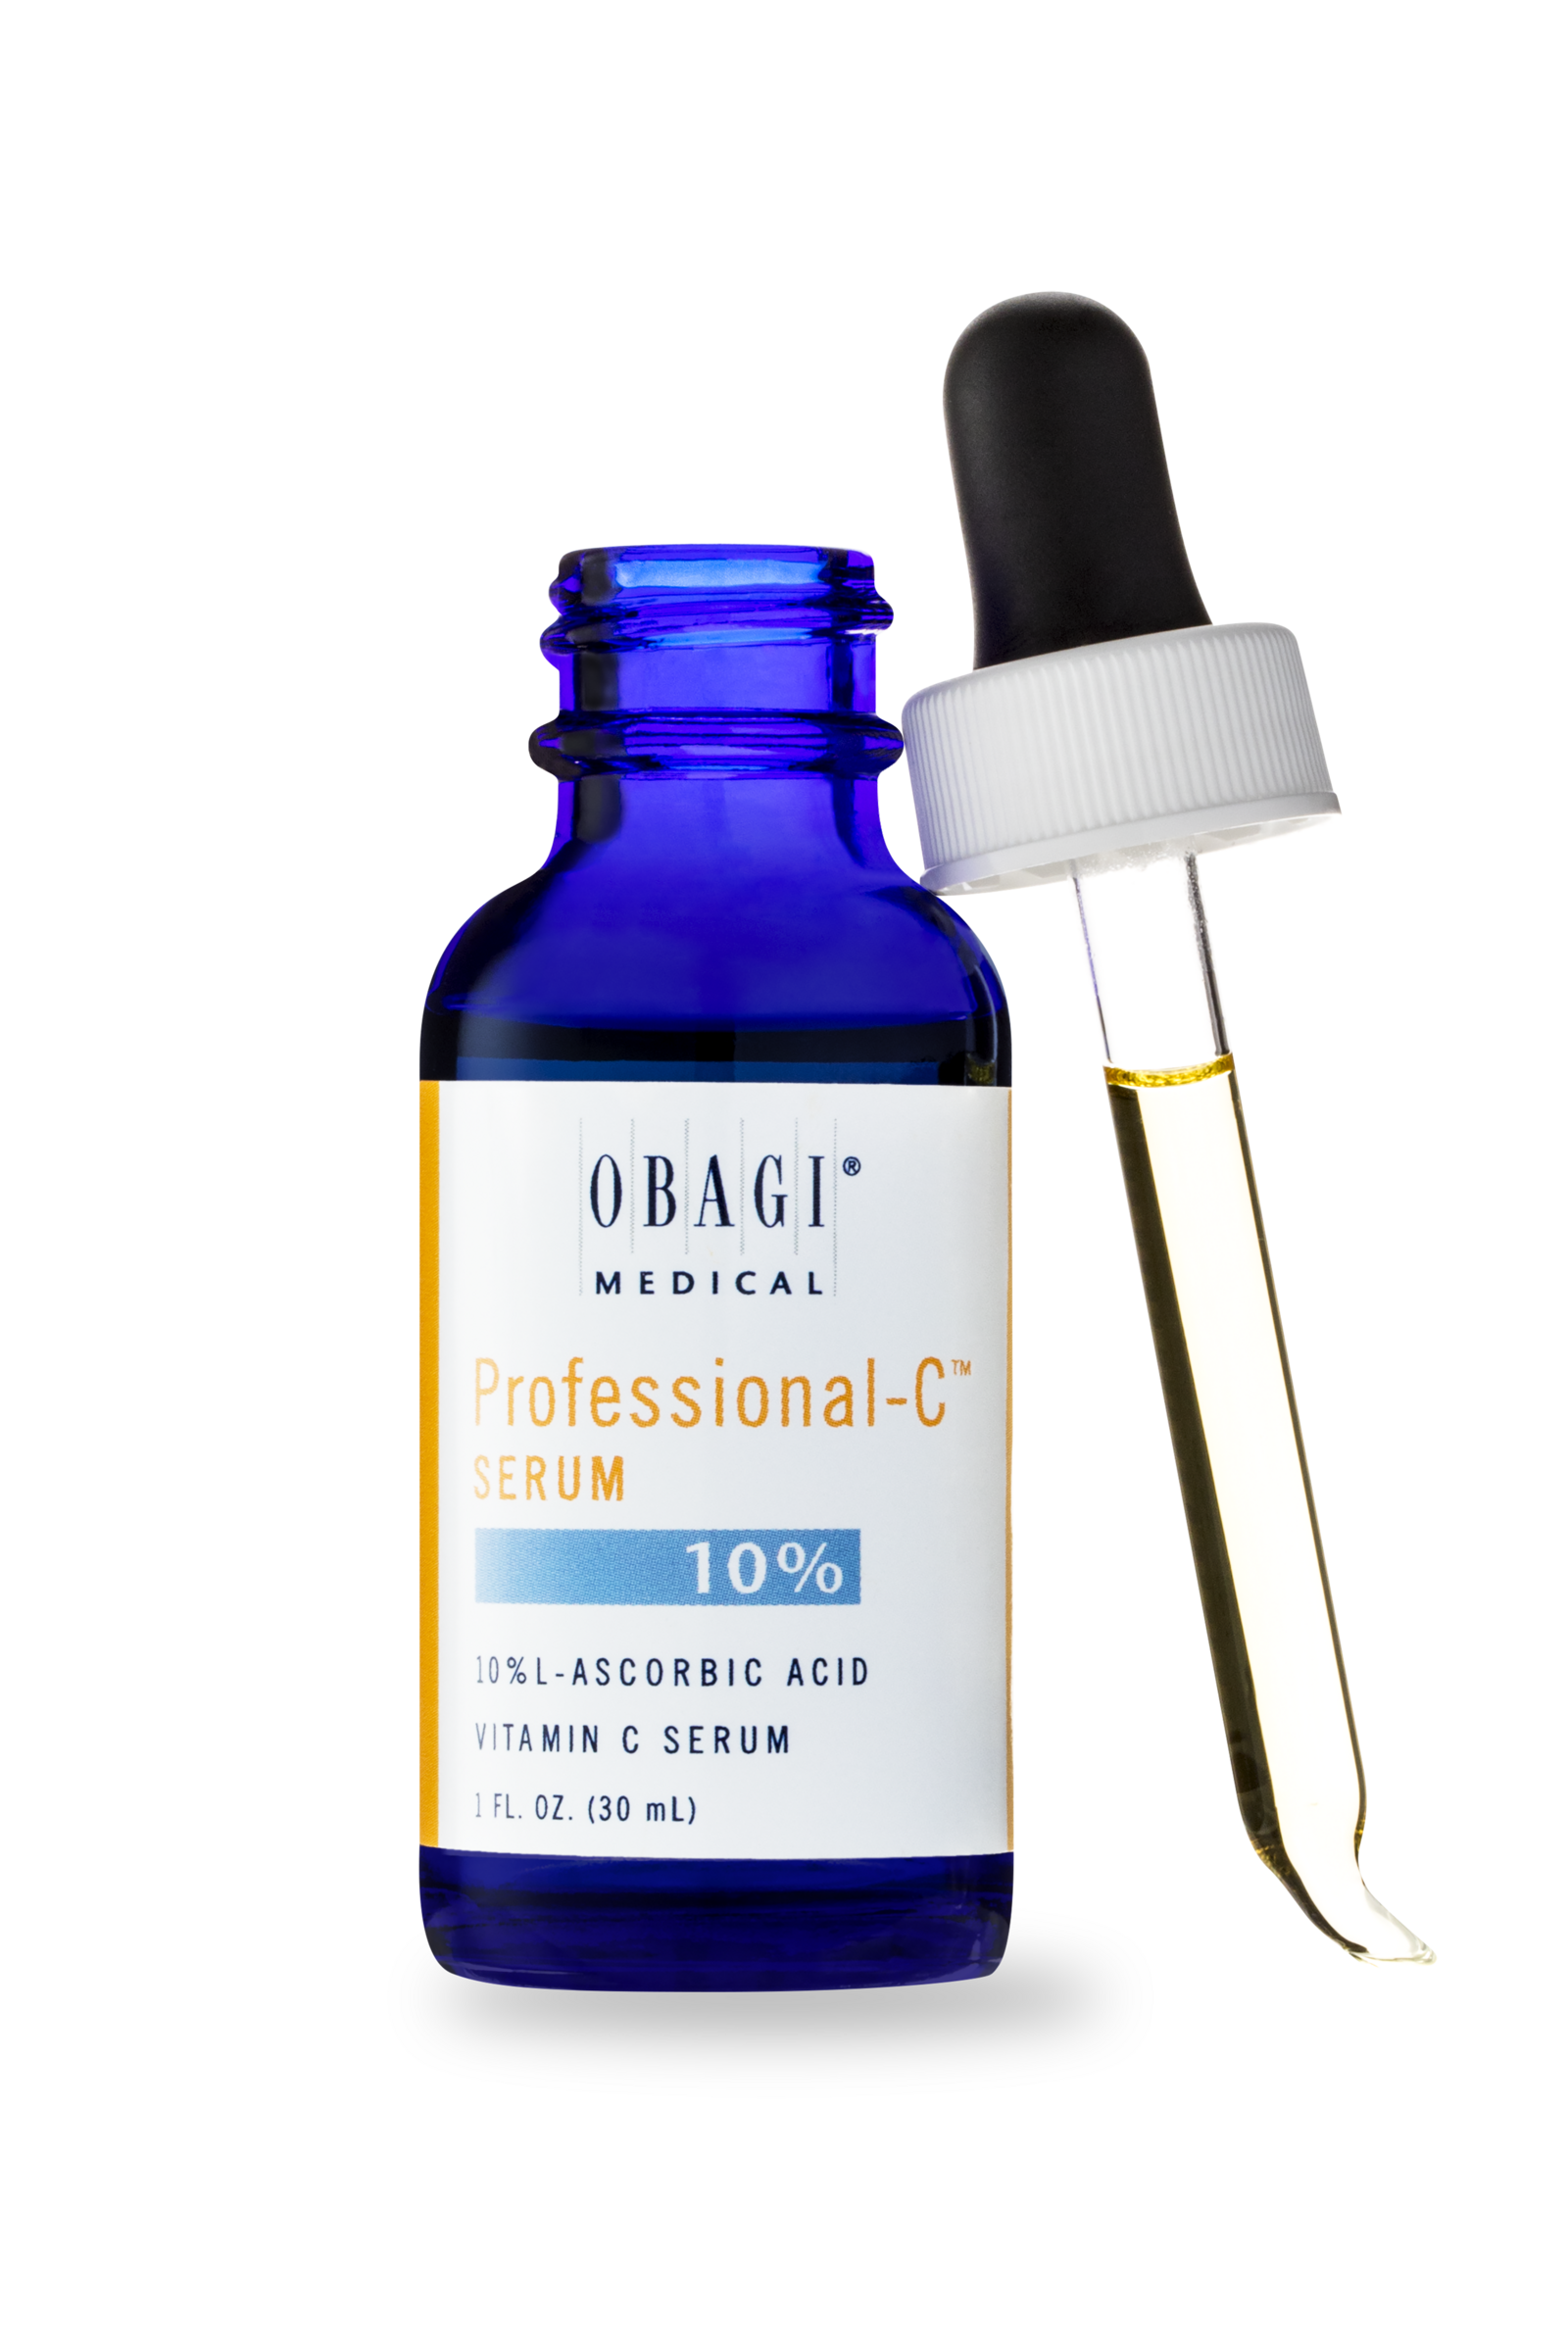 Obagi System Professional-C Vitamin C Serum 10% 1 oz - image 4 of 9